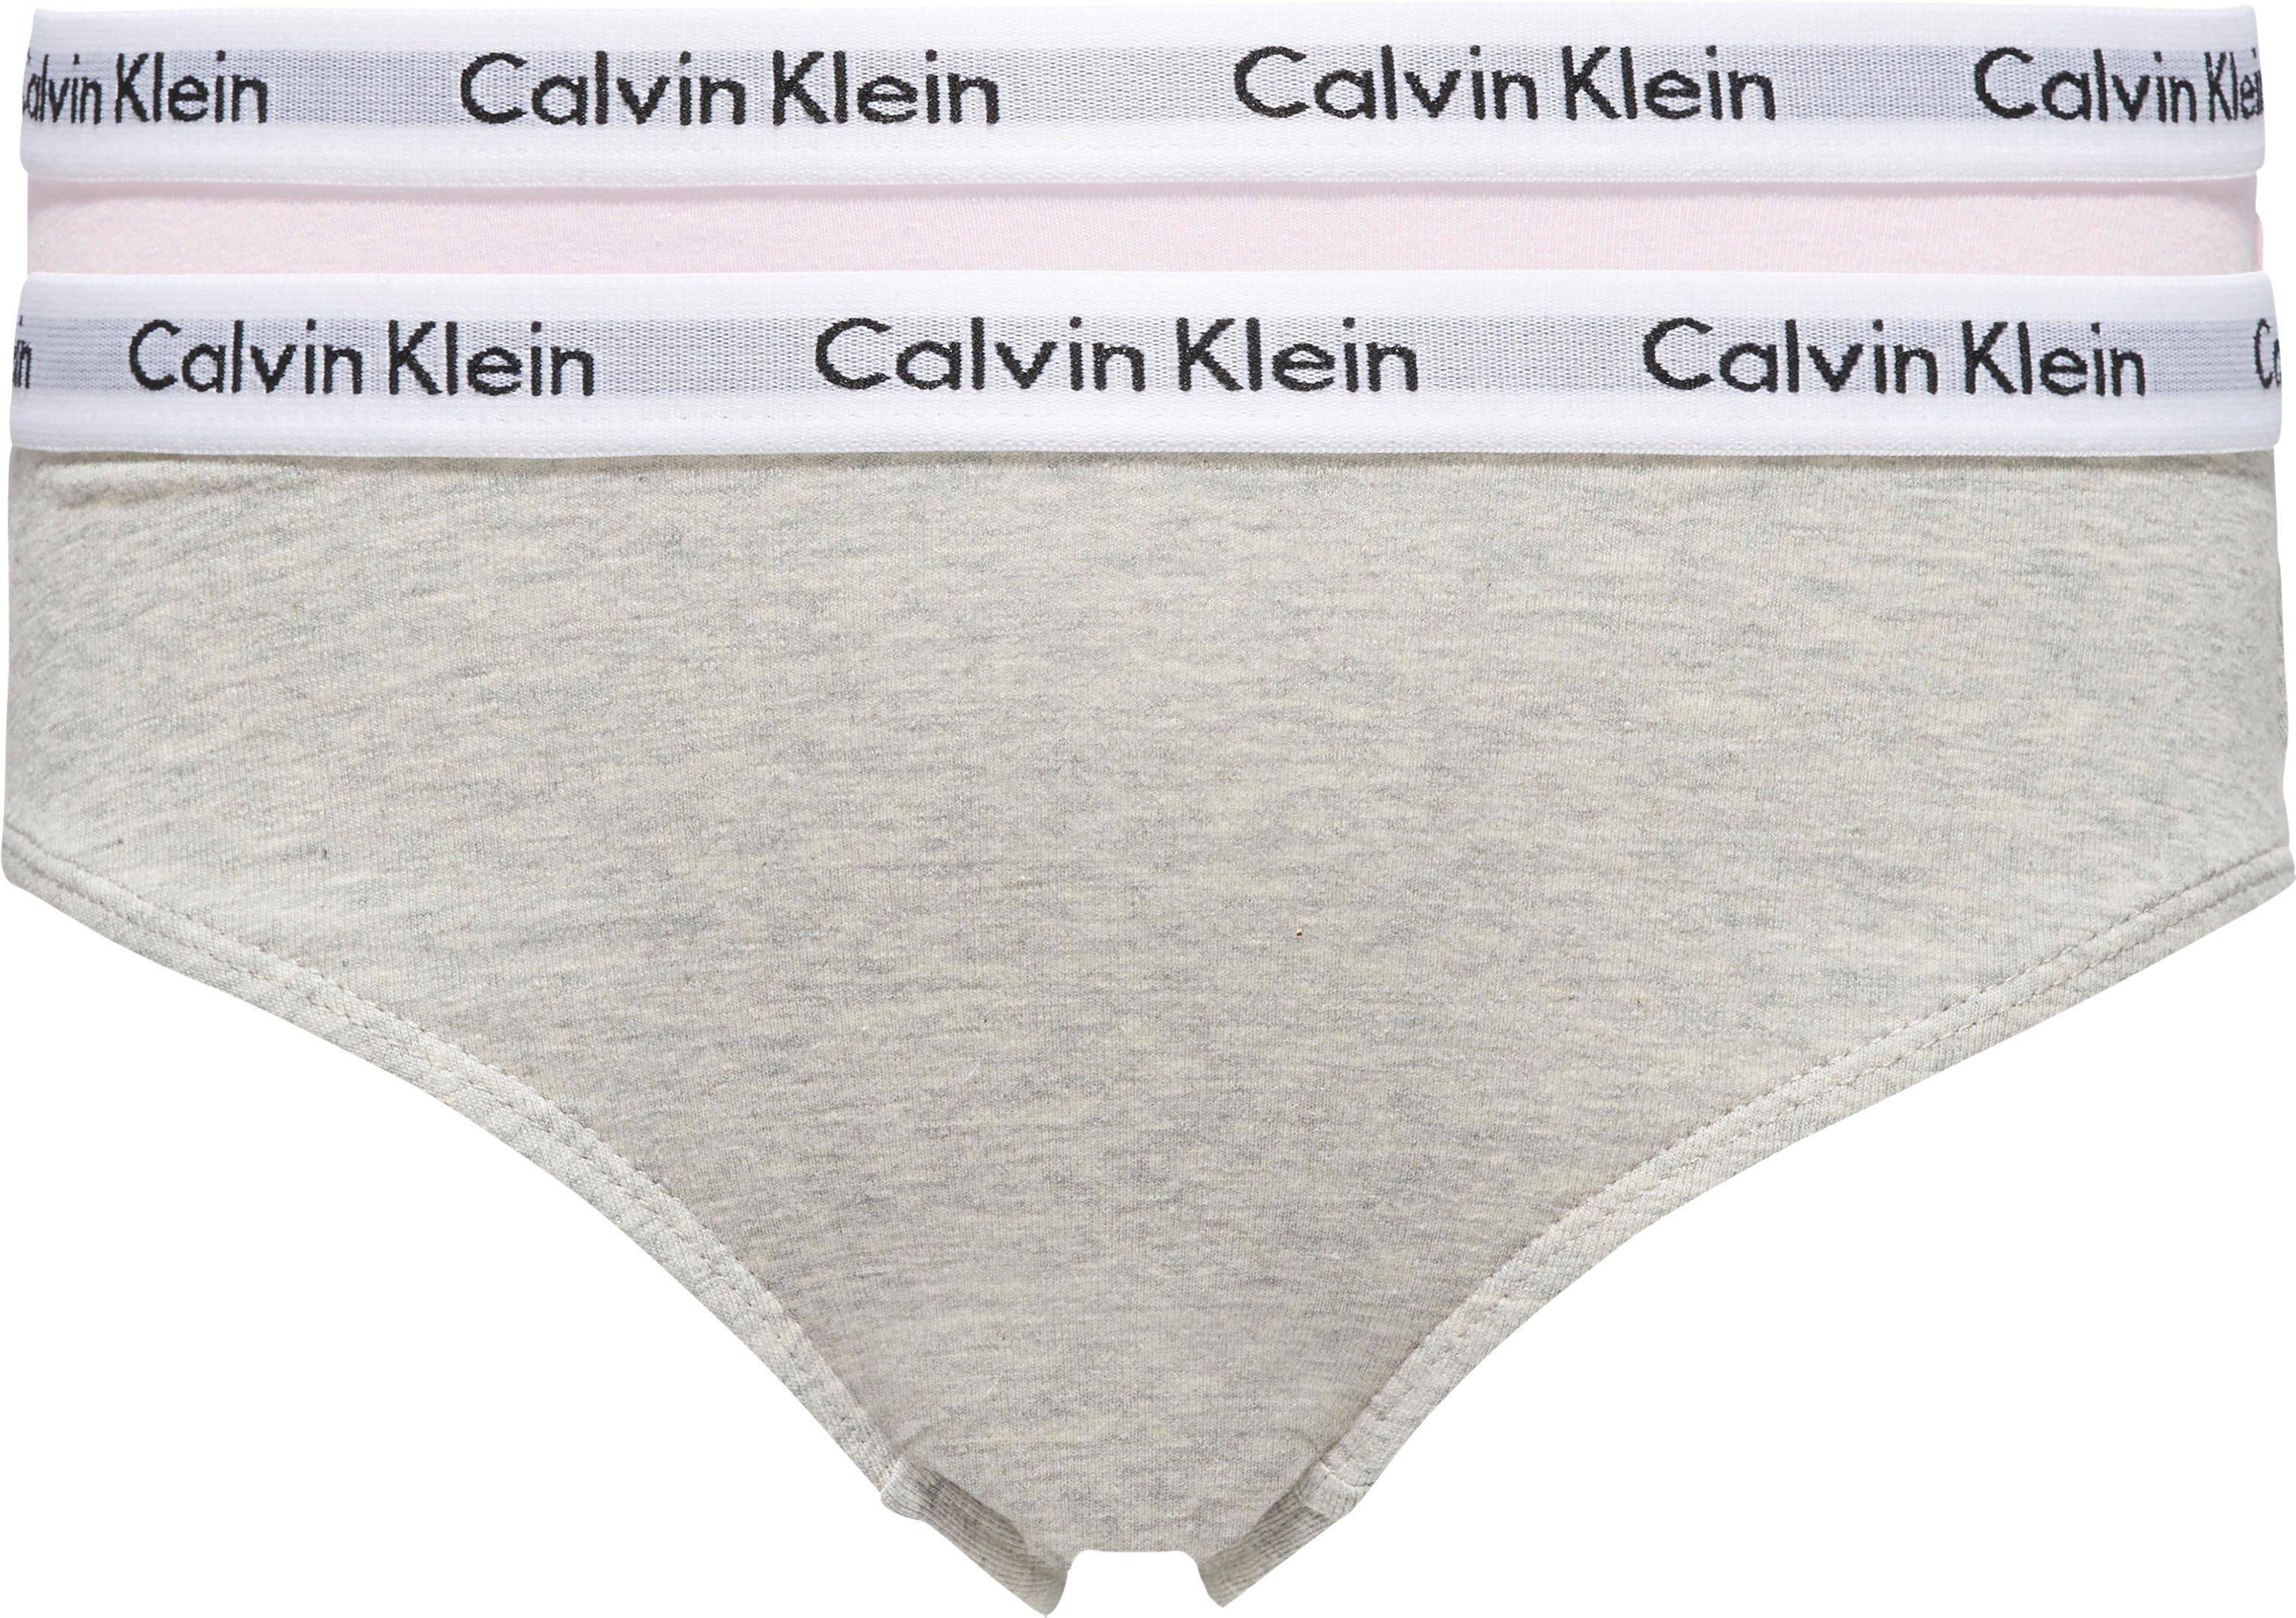 Klein Kinder Mädchen Junior MiniMe,für mit Underwear Logobund Slip Calvin Kids